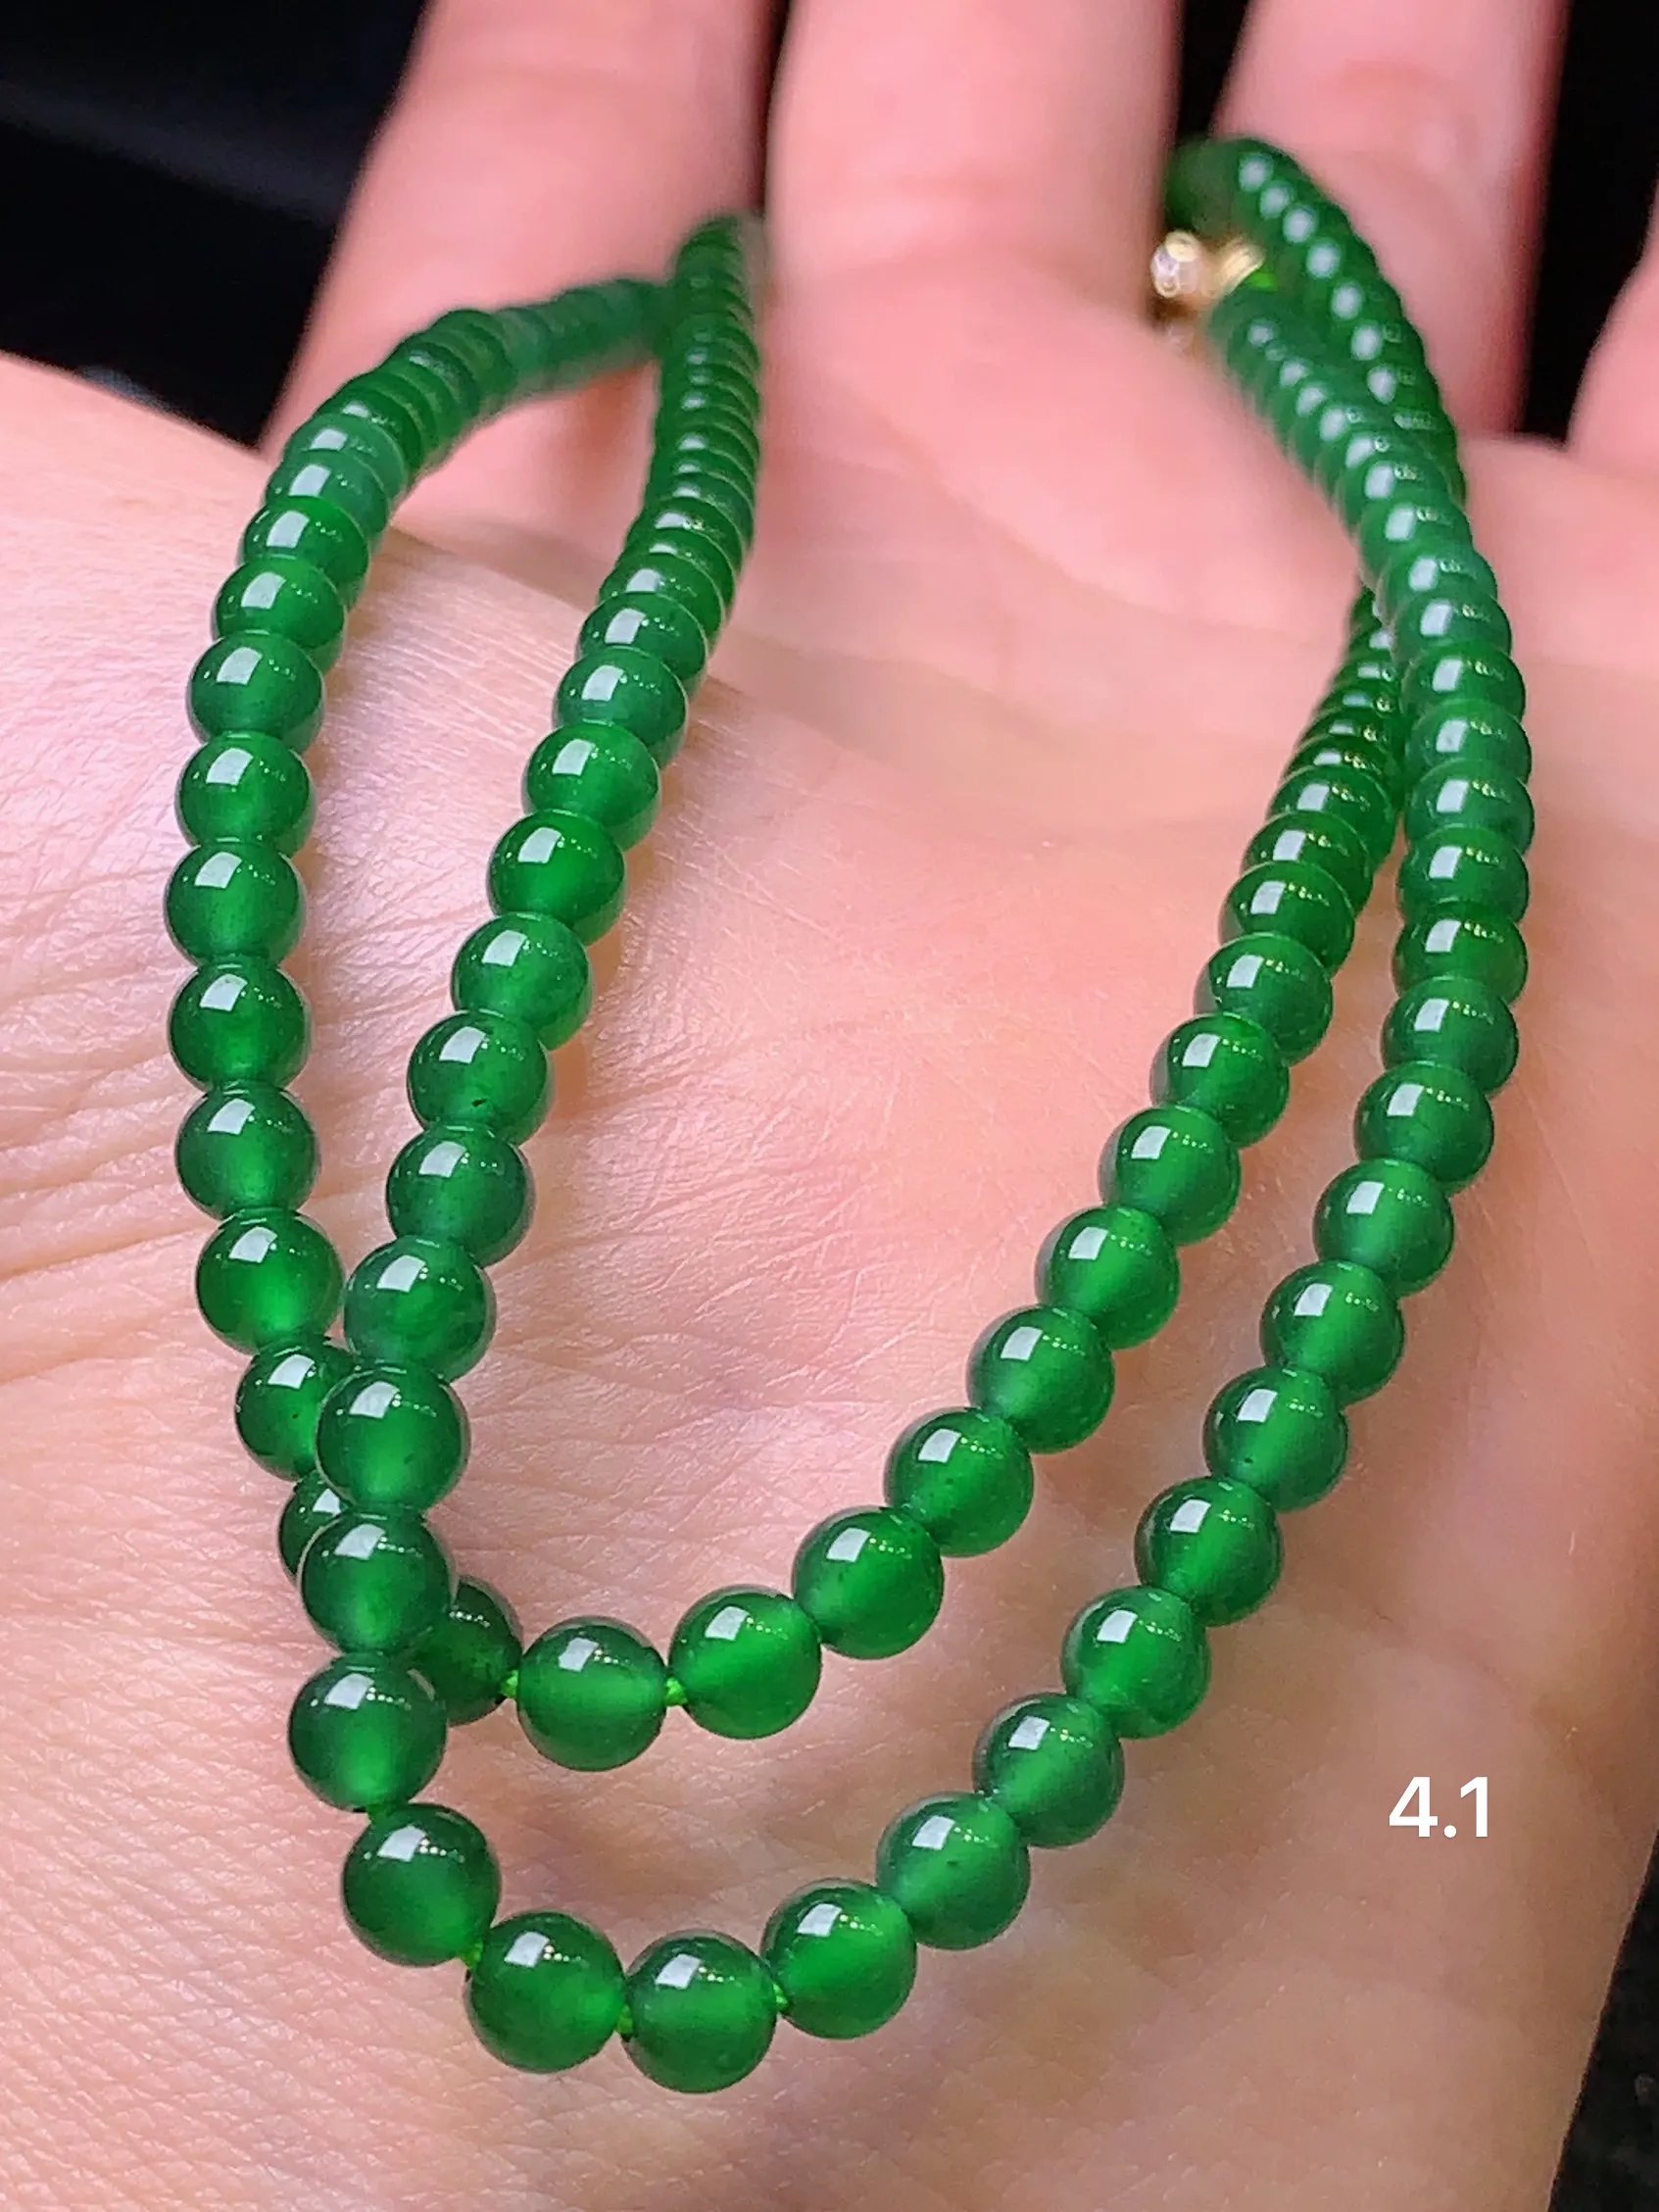 满绿圆珠项链 玉质细腻   色泽艳丽 圆润饱满 款式新颖时尚精美 取一尺寸4.1